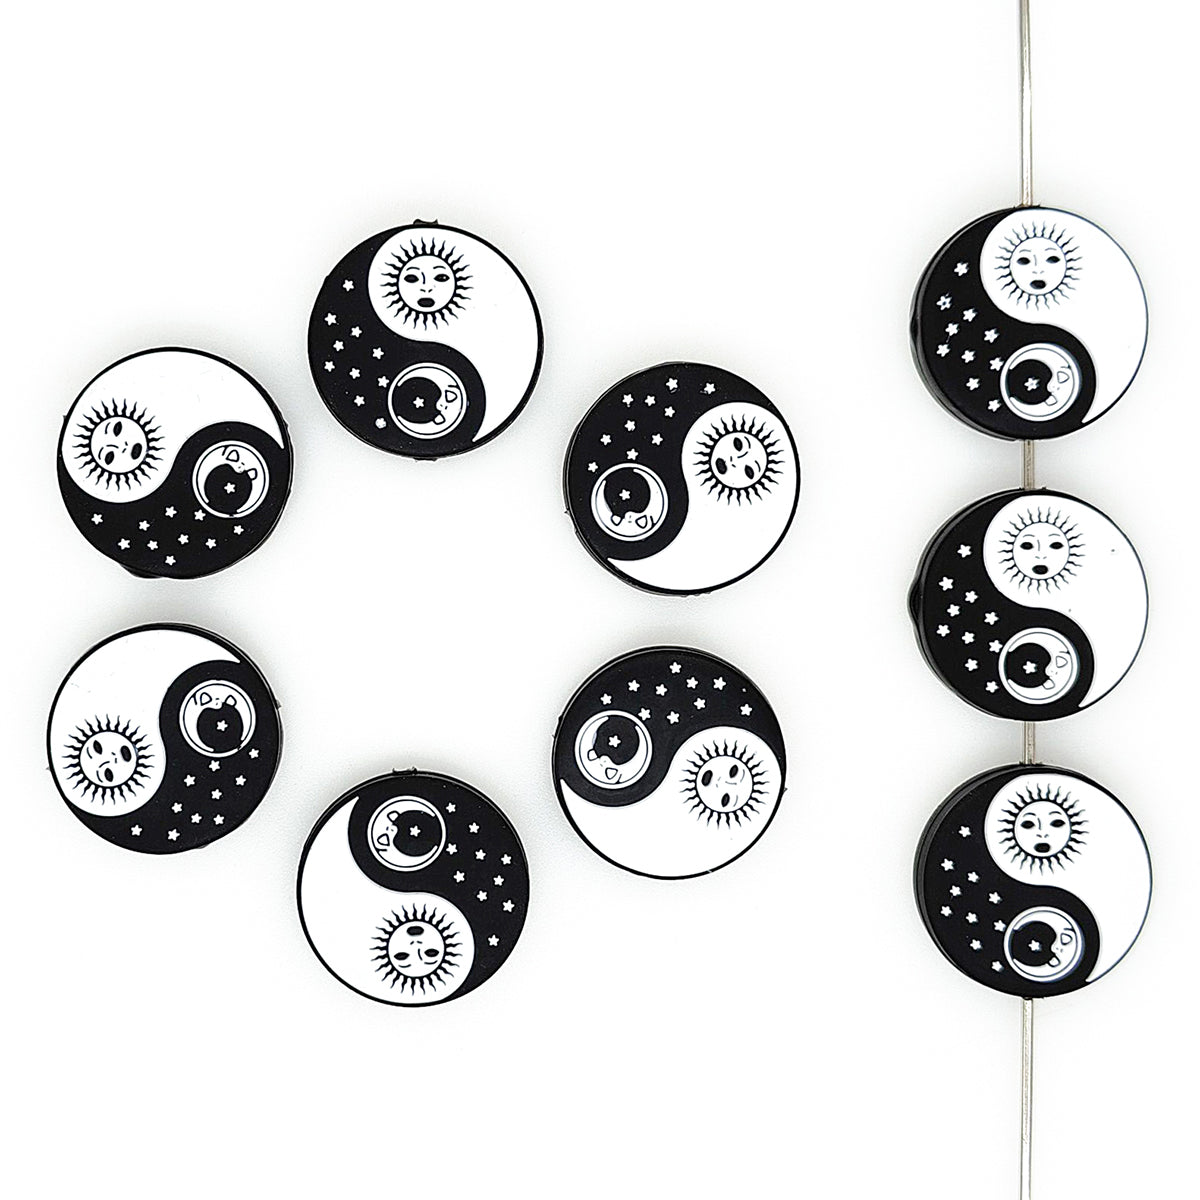 Yin Yang Focal Beads